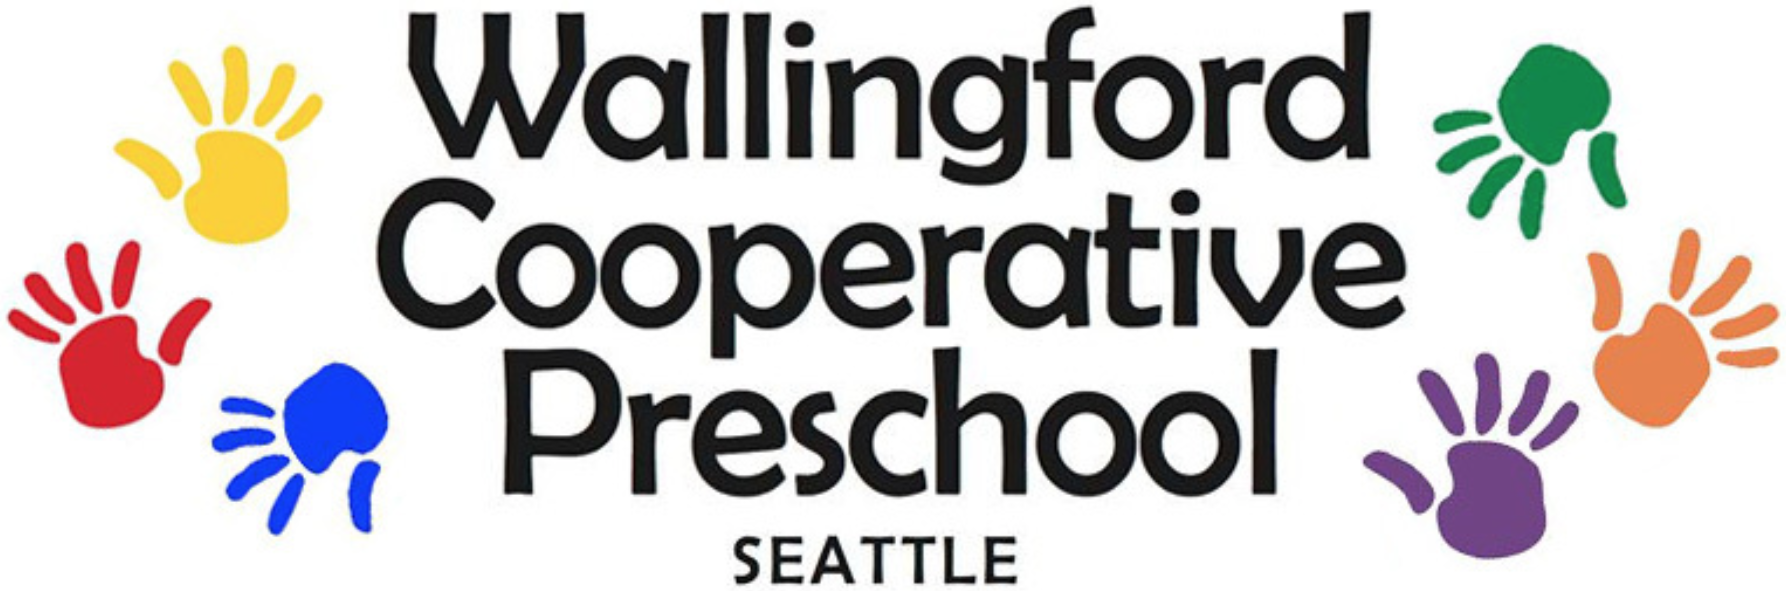 Wallingford Co-op Preschool